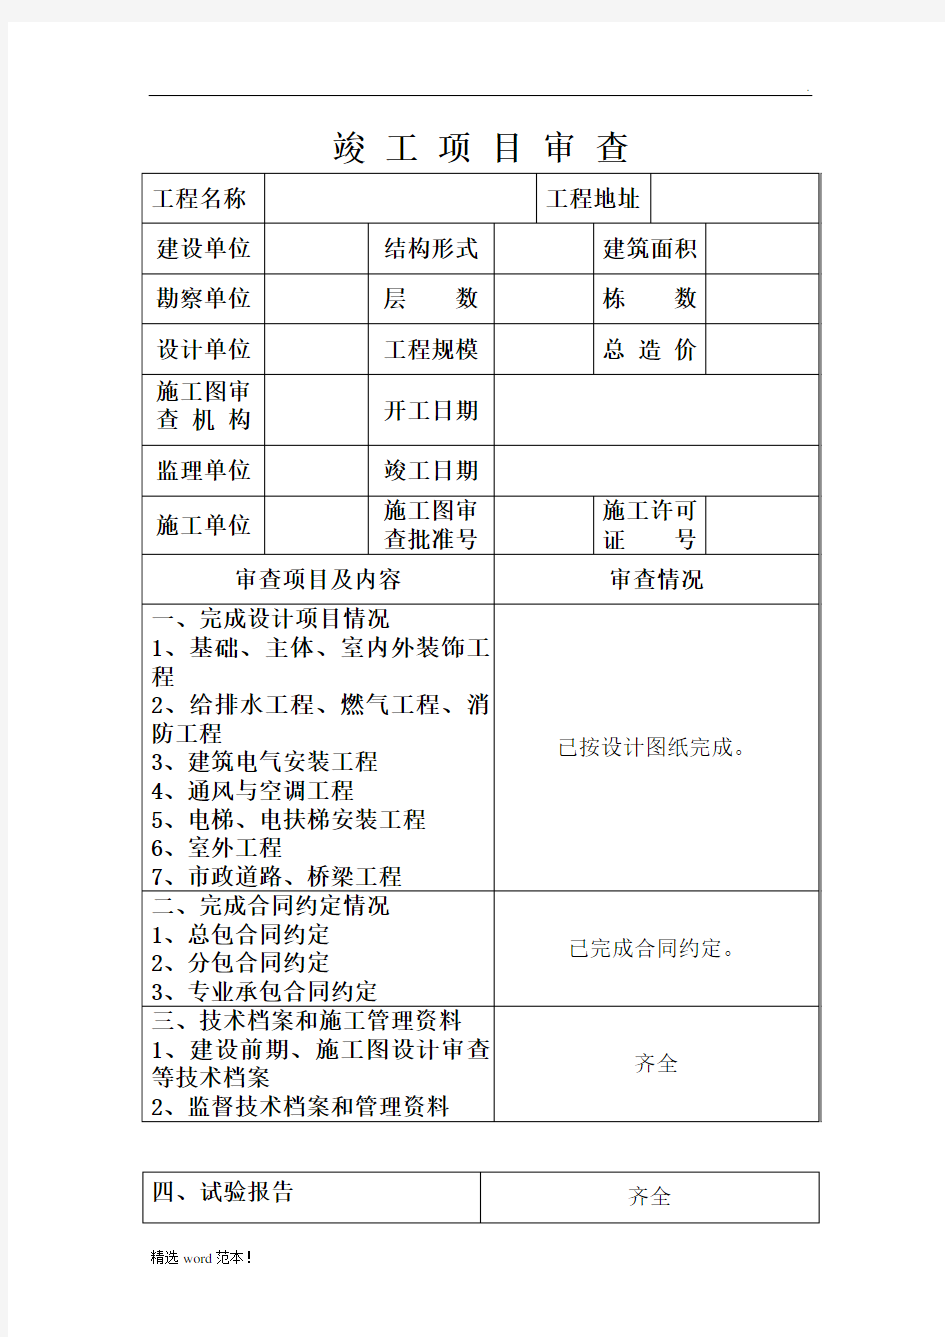 河北省建设工程竣工验收报告格式及填写范例